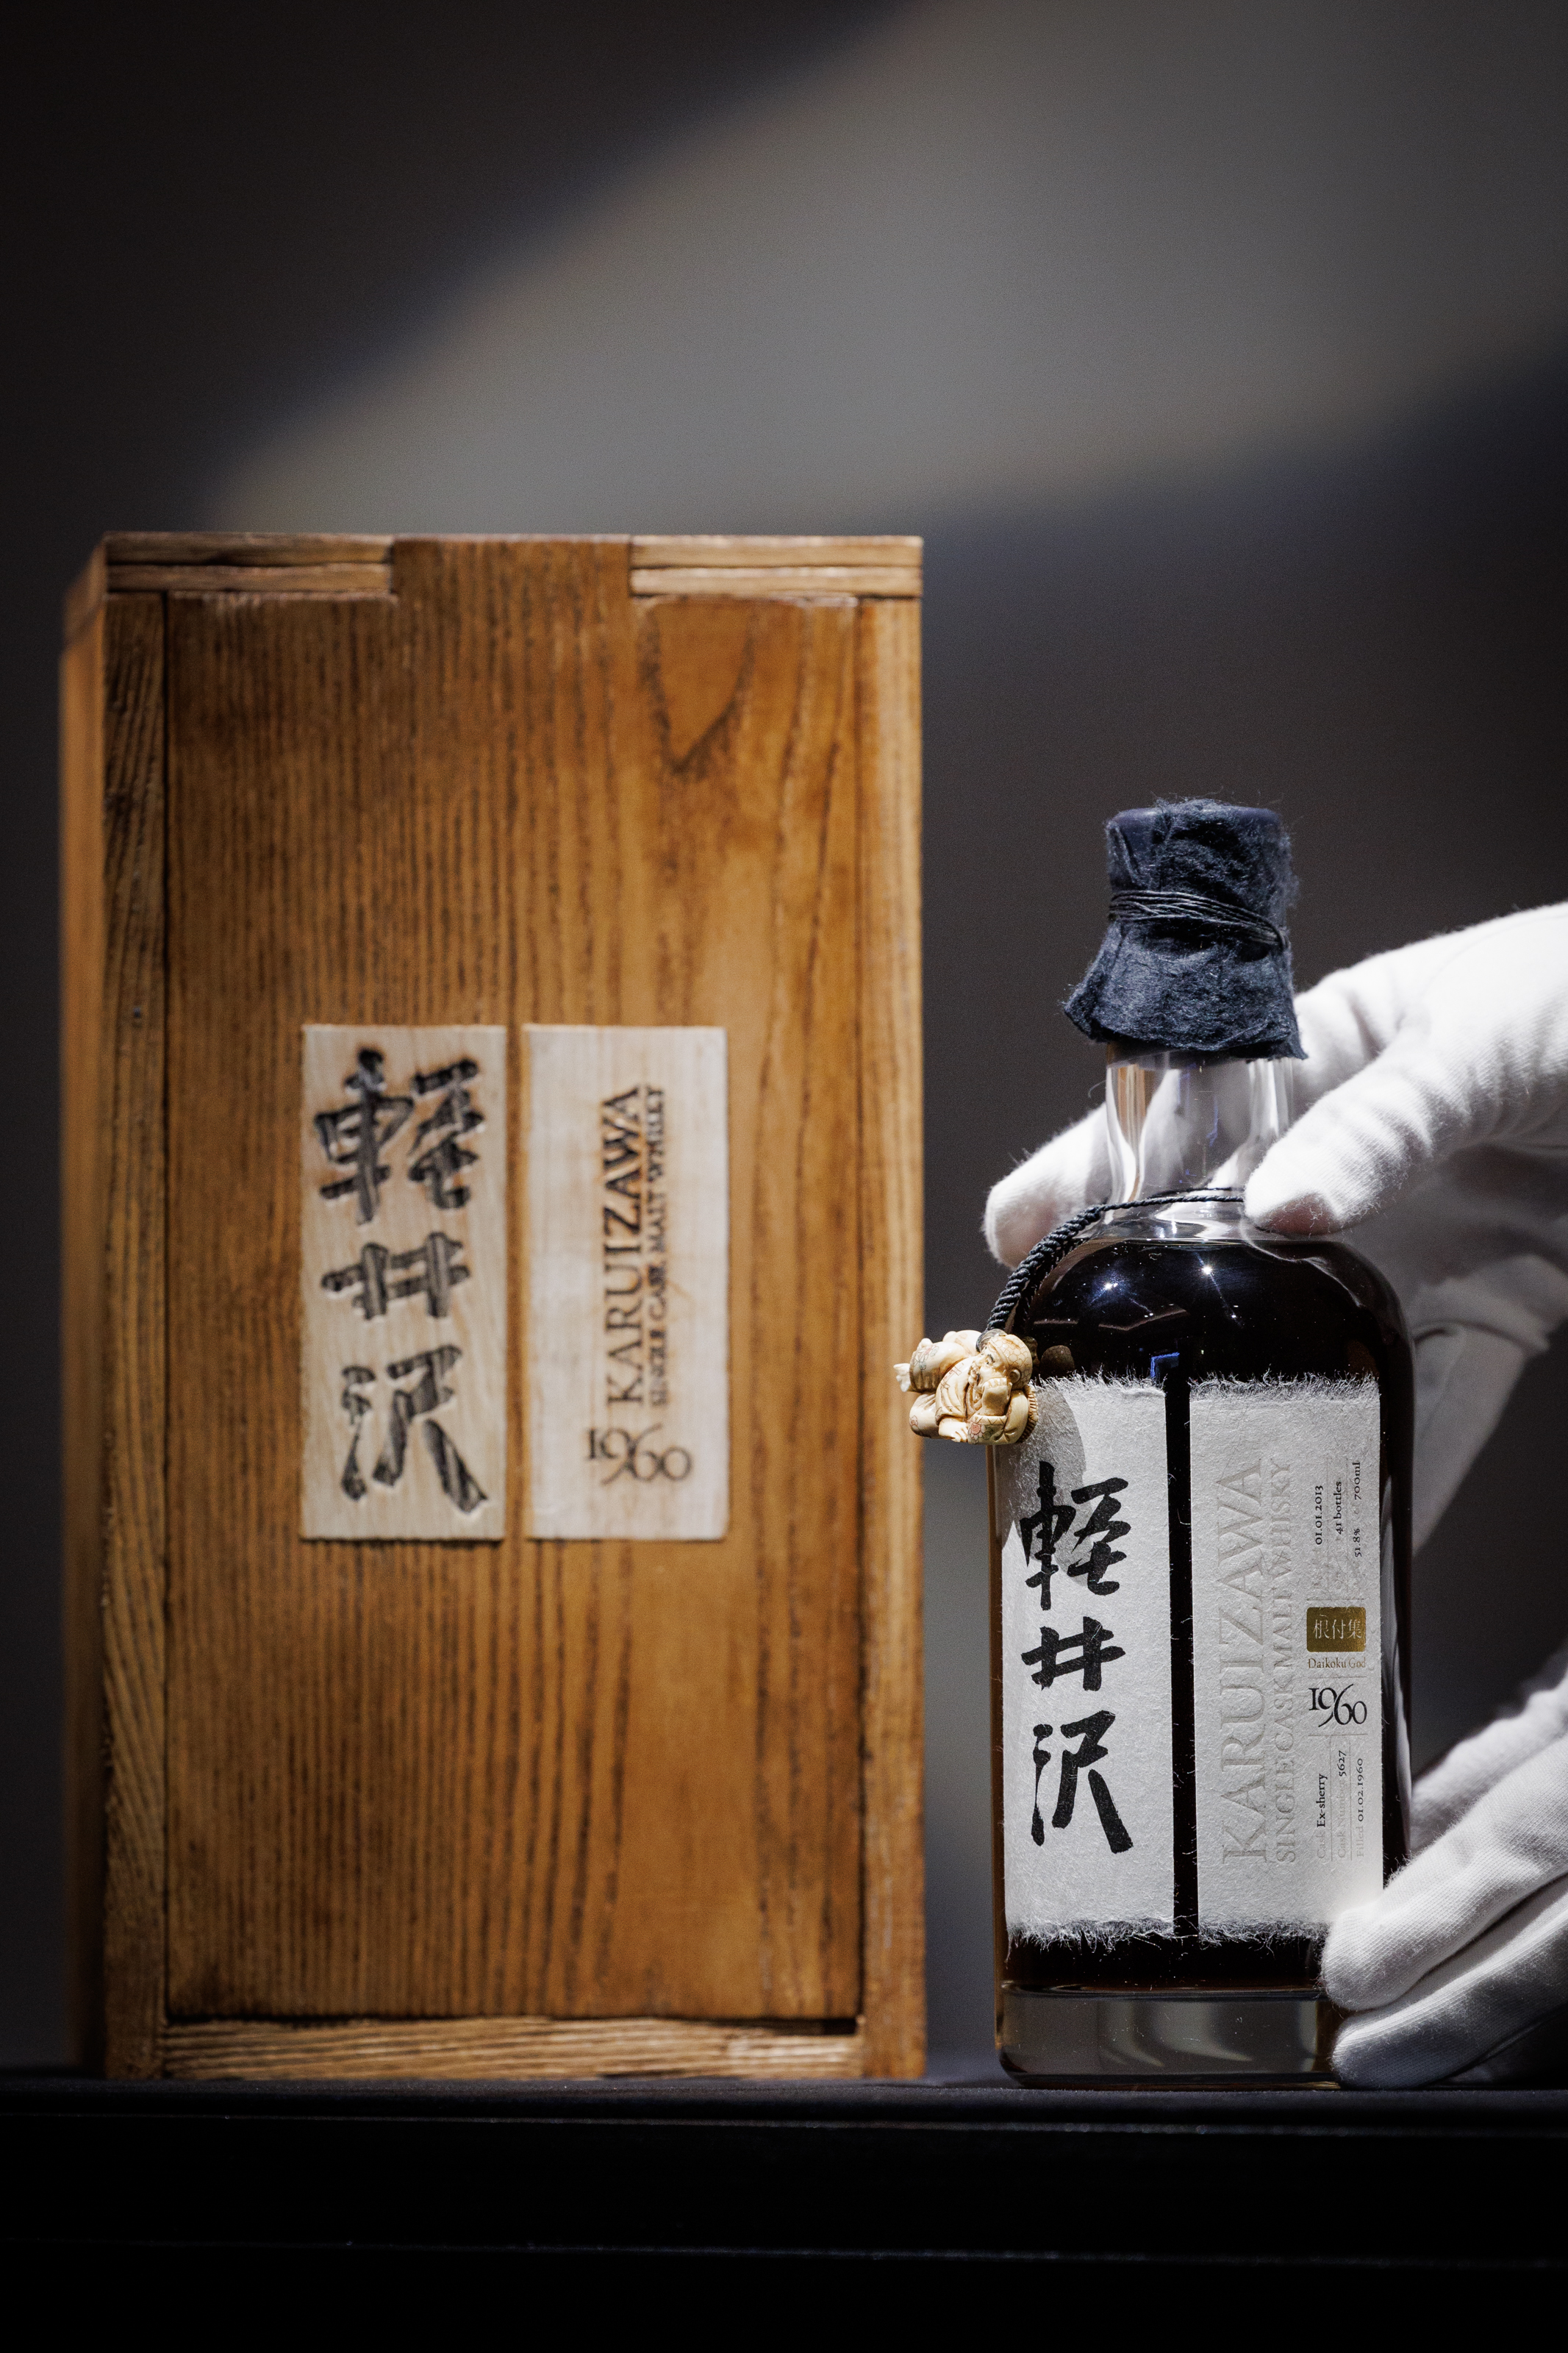 日本製ウイスキー高値落札 「軽井沢」５６００万円 - 産経ニュース